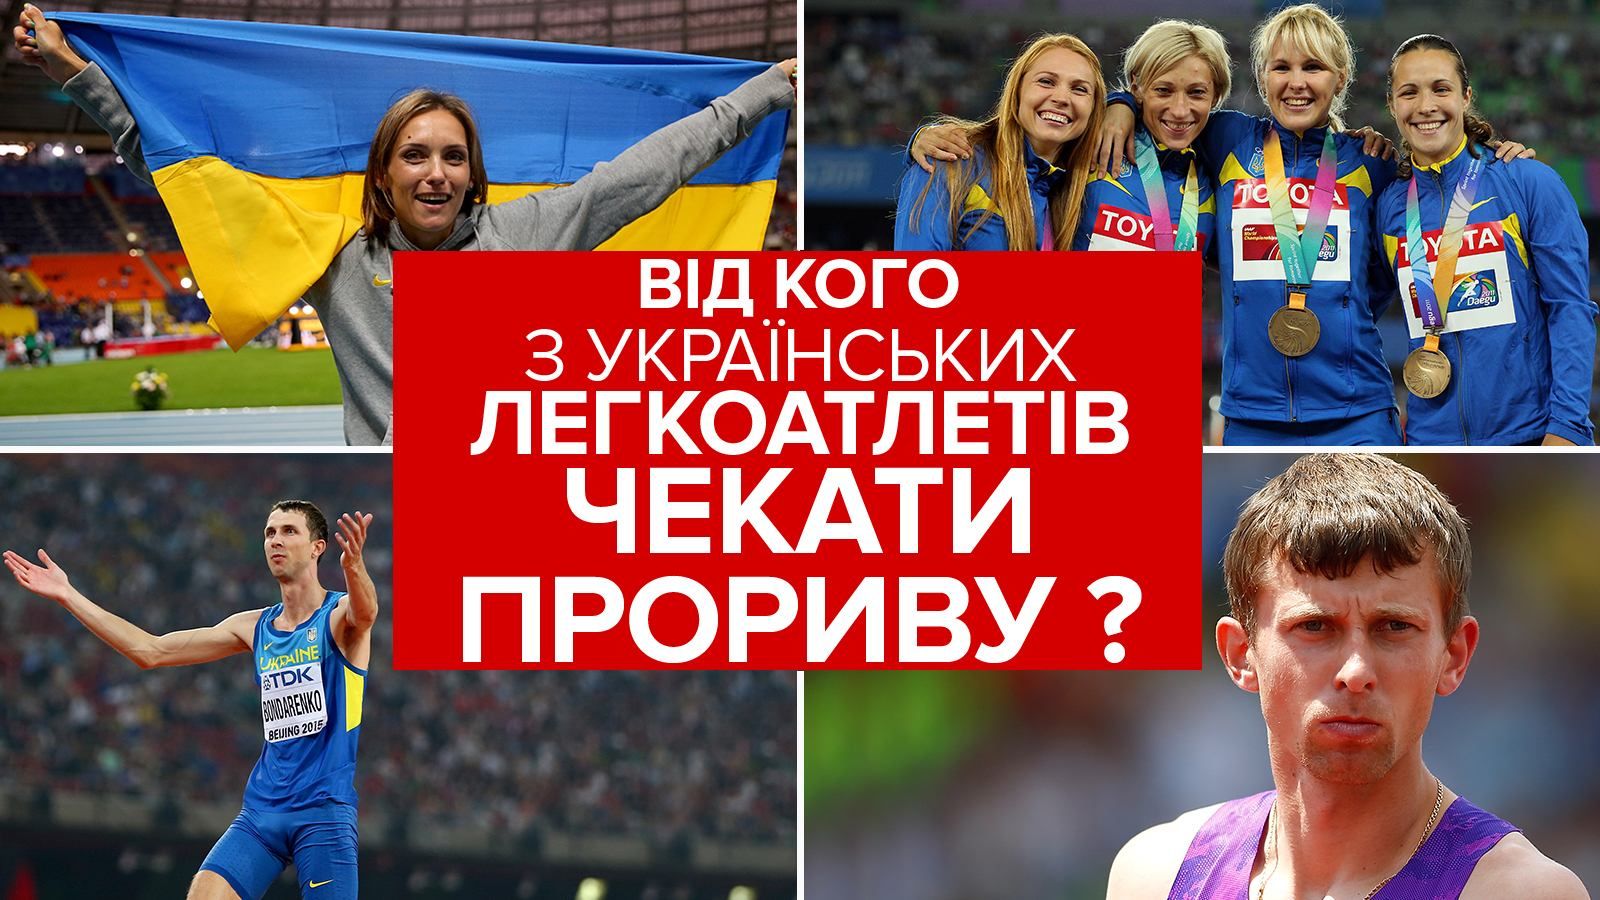 Олімпіада-2016: хто з українських легкоатлетів може повернутись додому з медаллю